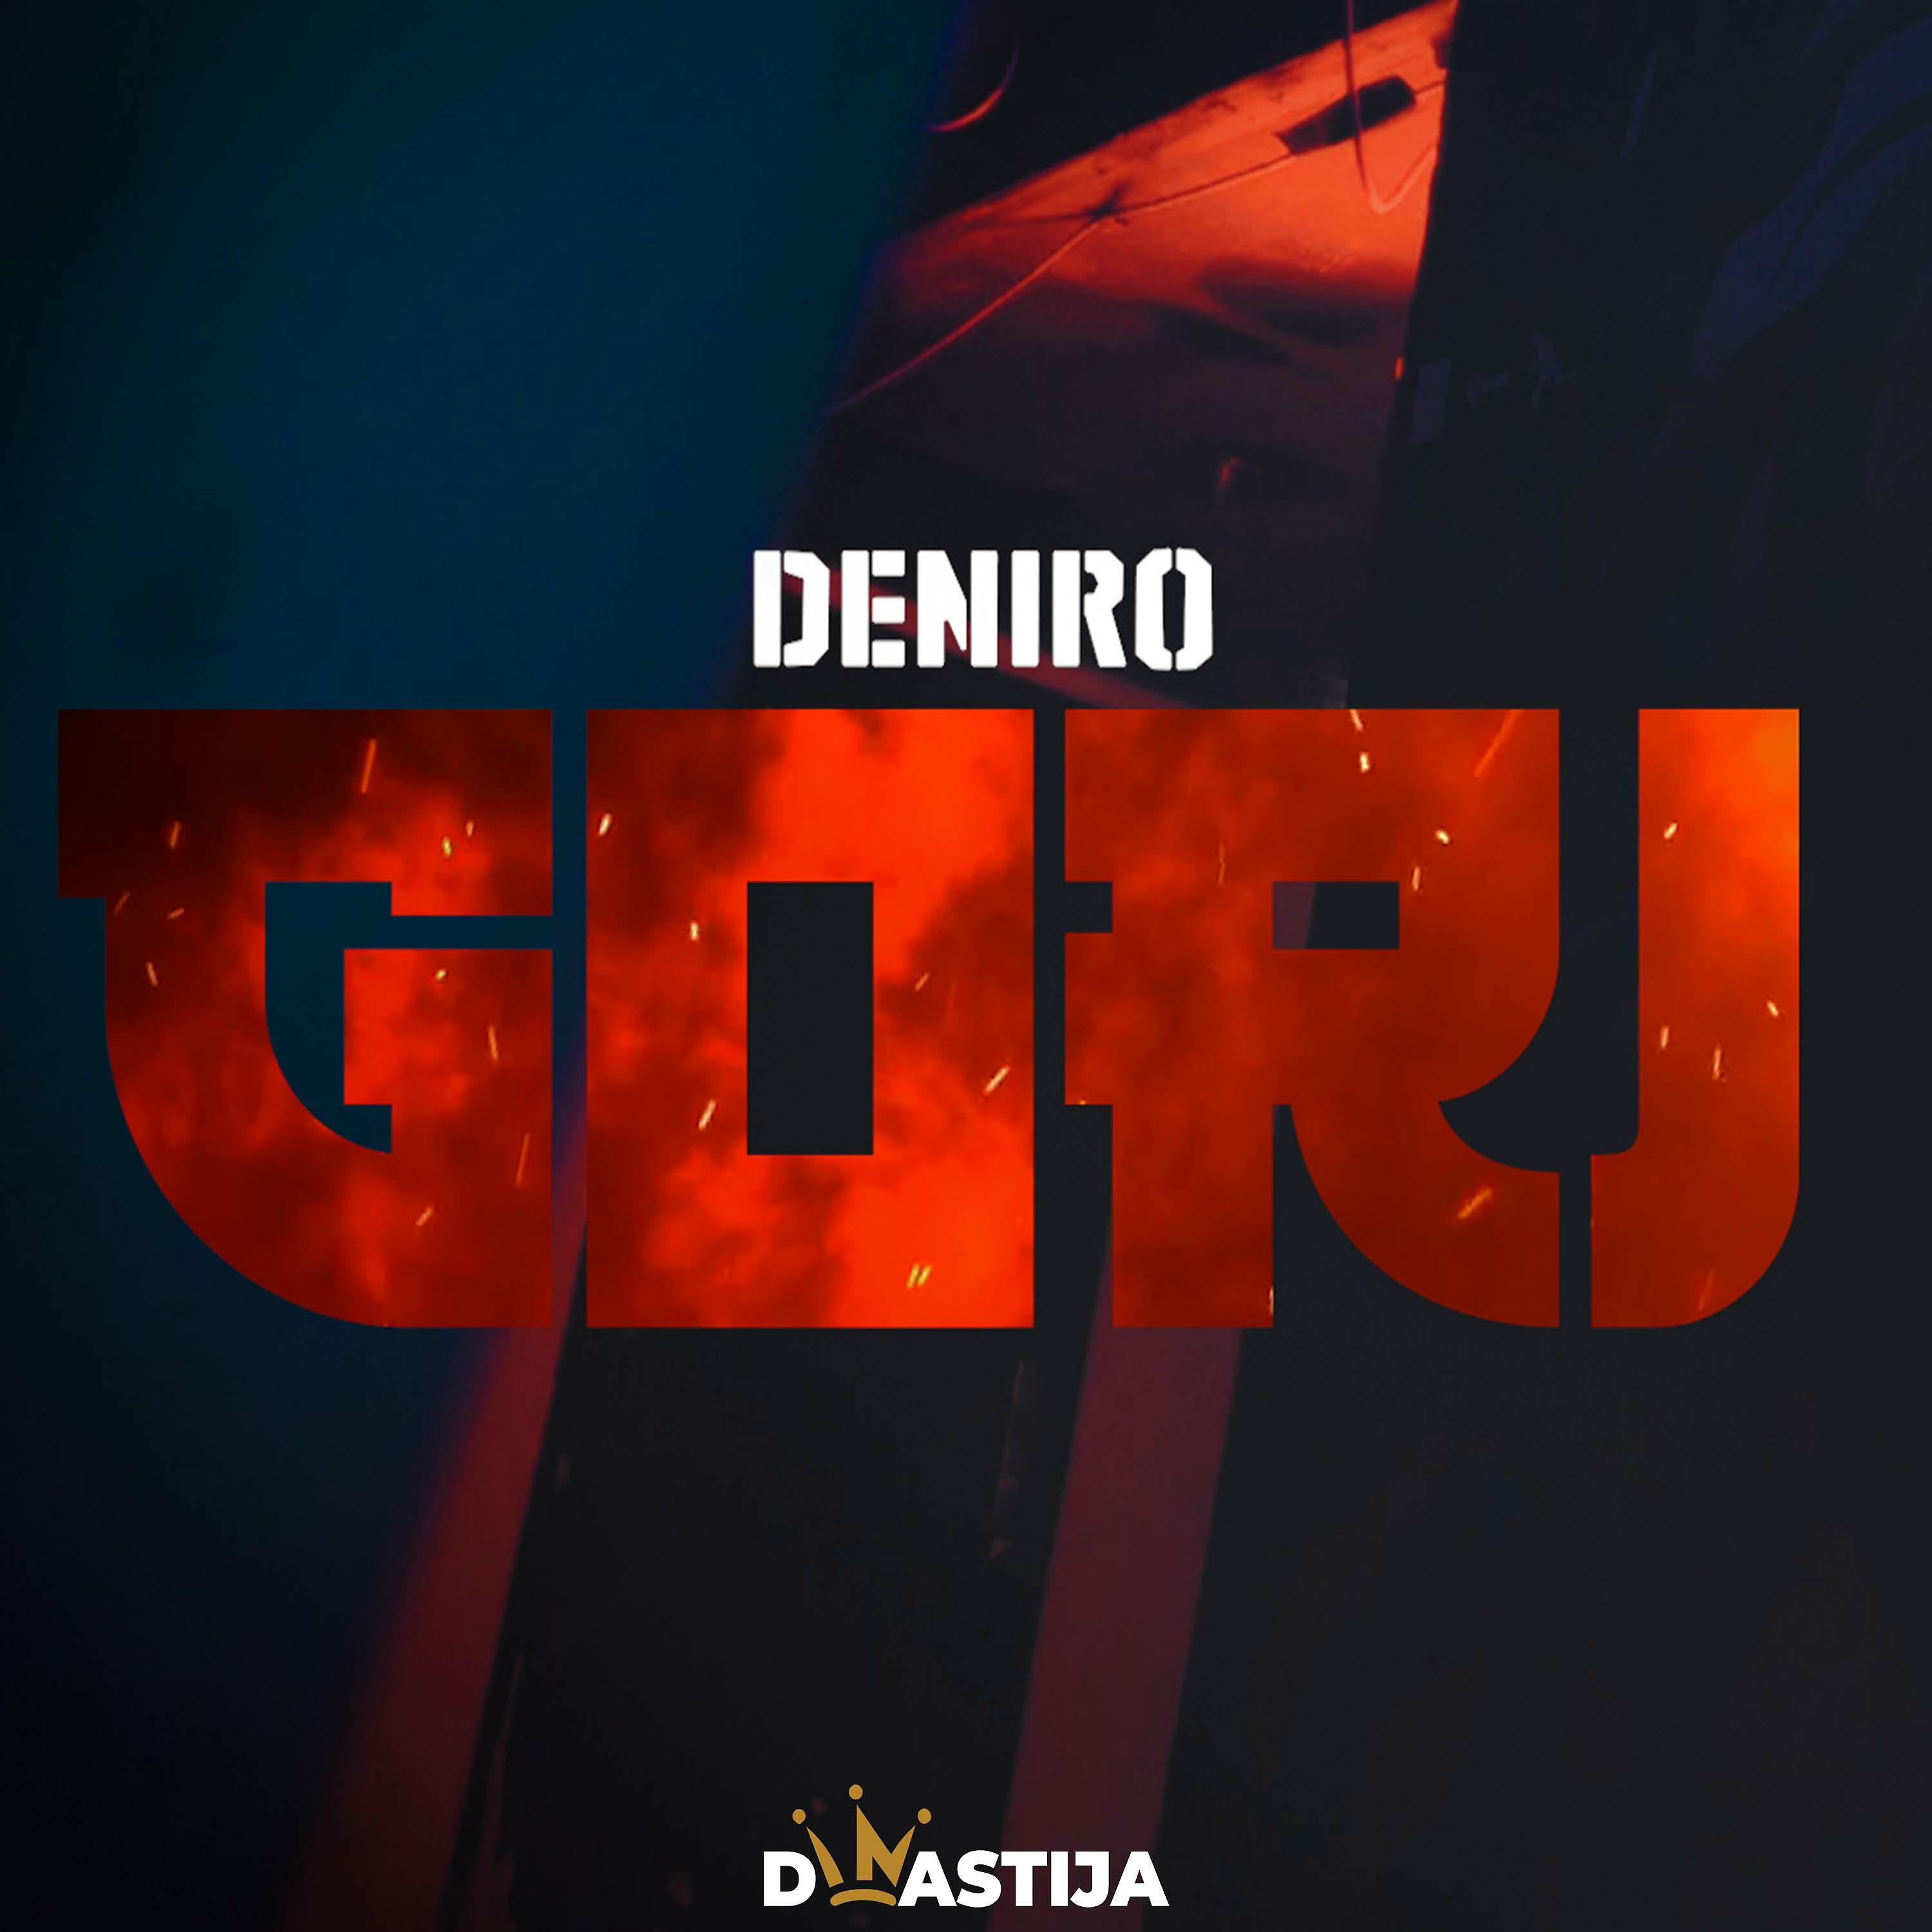 Постер альбома Gori